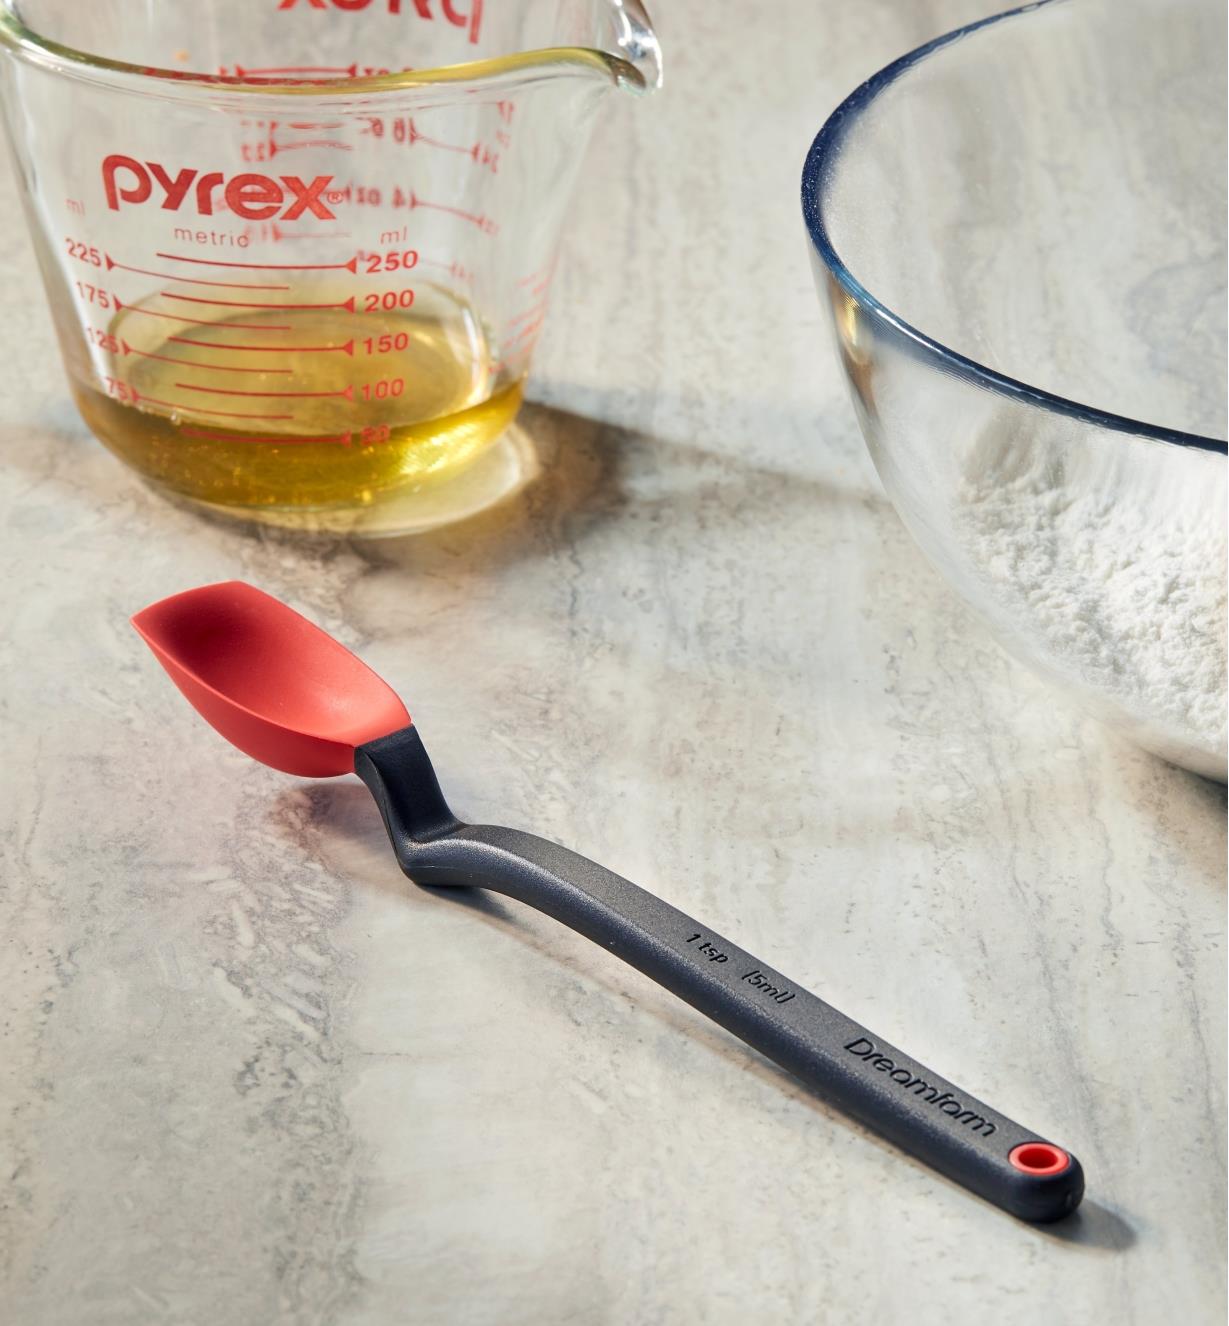 Petite cuillère-spatule sur un comptoir près d'une tasse à mesurer en verre et d'un bol à mélanger